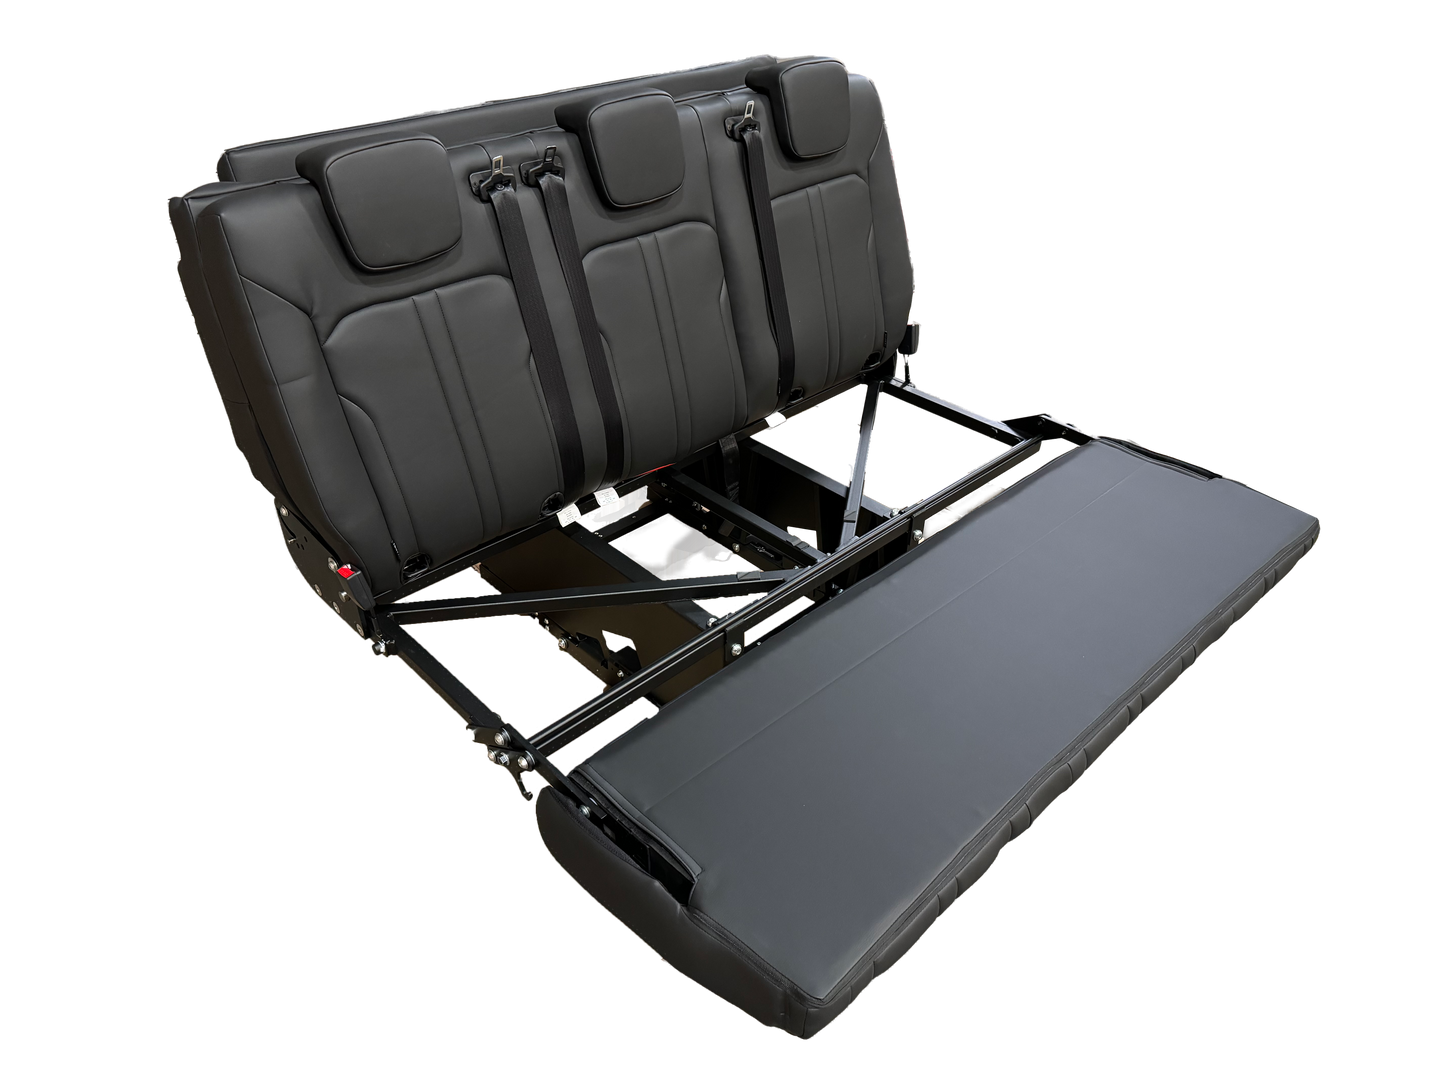 SAF43 Seat Bed